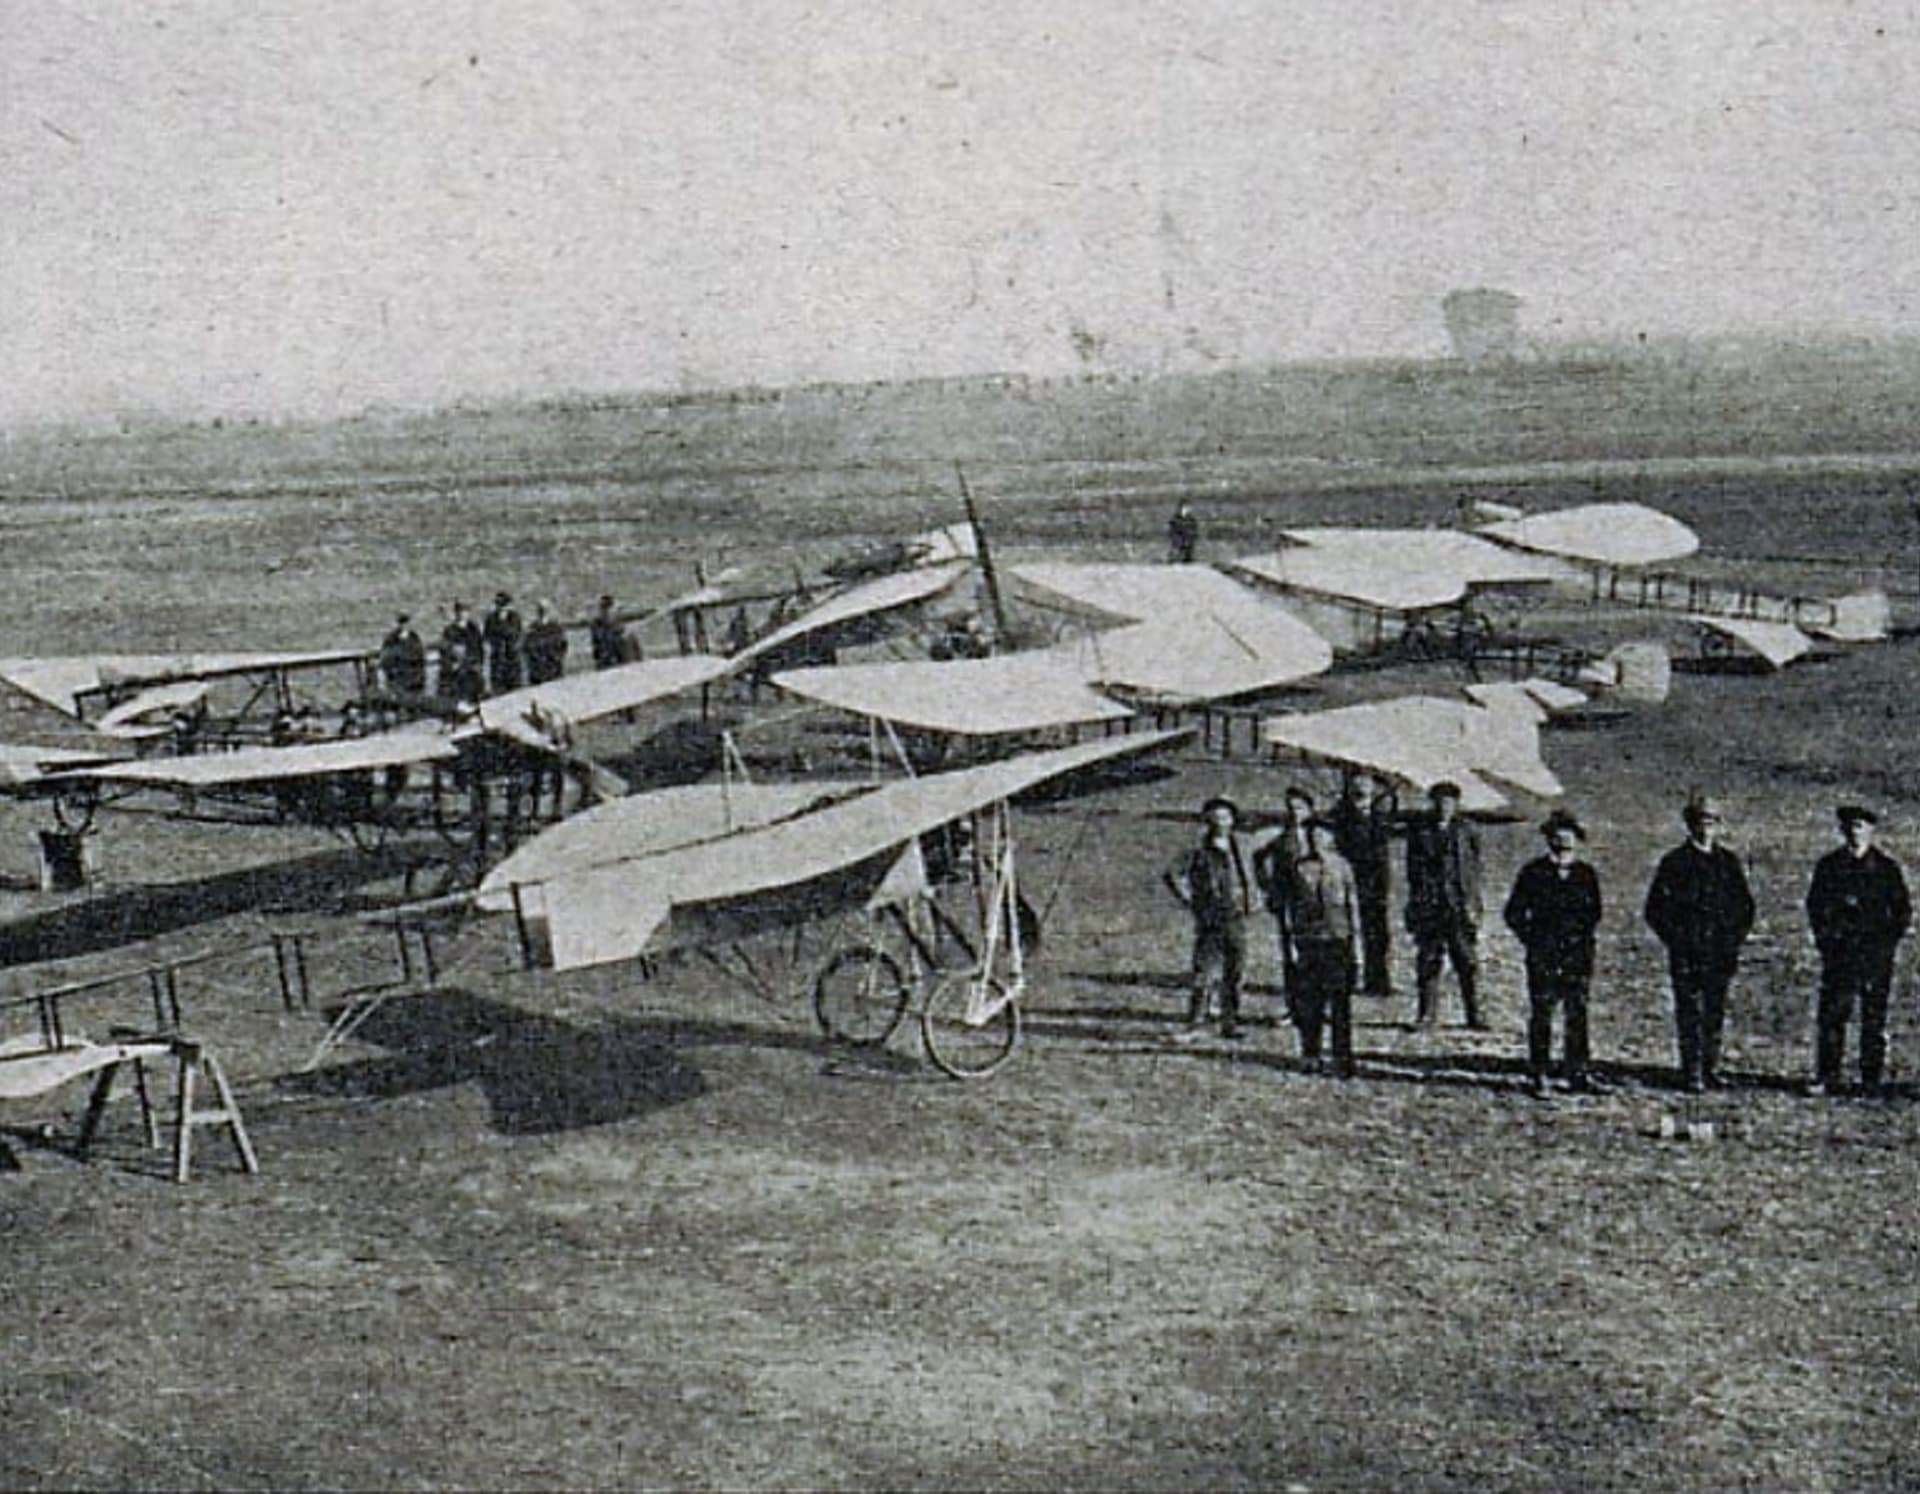 Letecká škola Jana Kašpara v Pardubicích v roce 1911. Z knihy Z dějin naší vzduchoplavby z roku 1927.